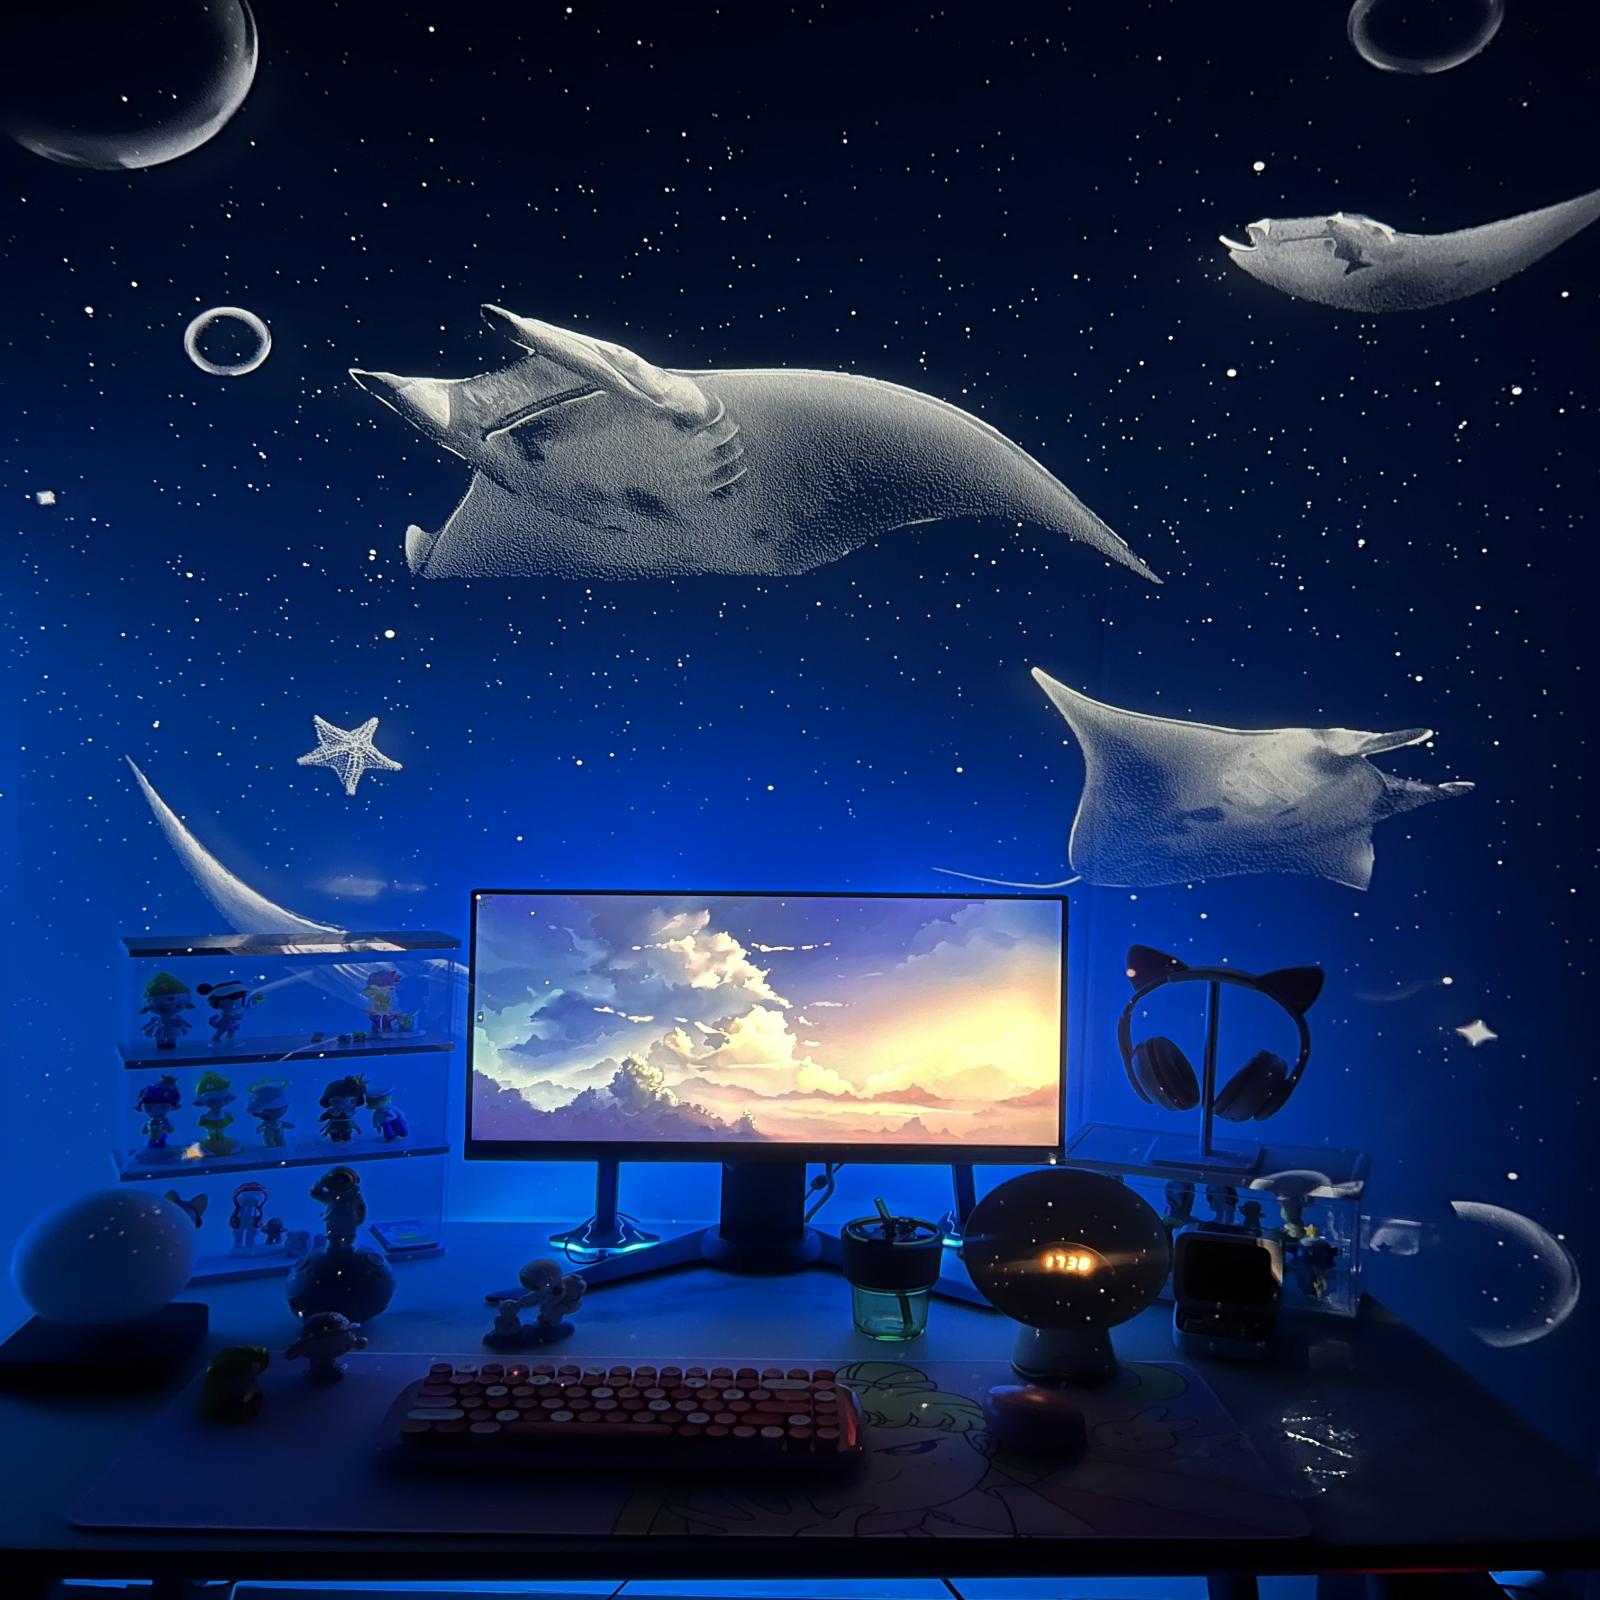 Devilfish Mischief - Disques de projecteur POCOCO Galaxy | 1 pièce 